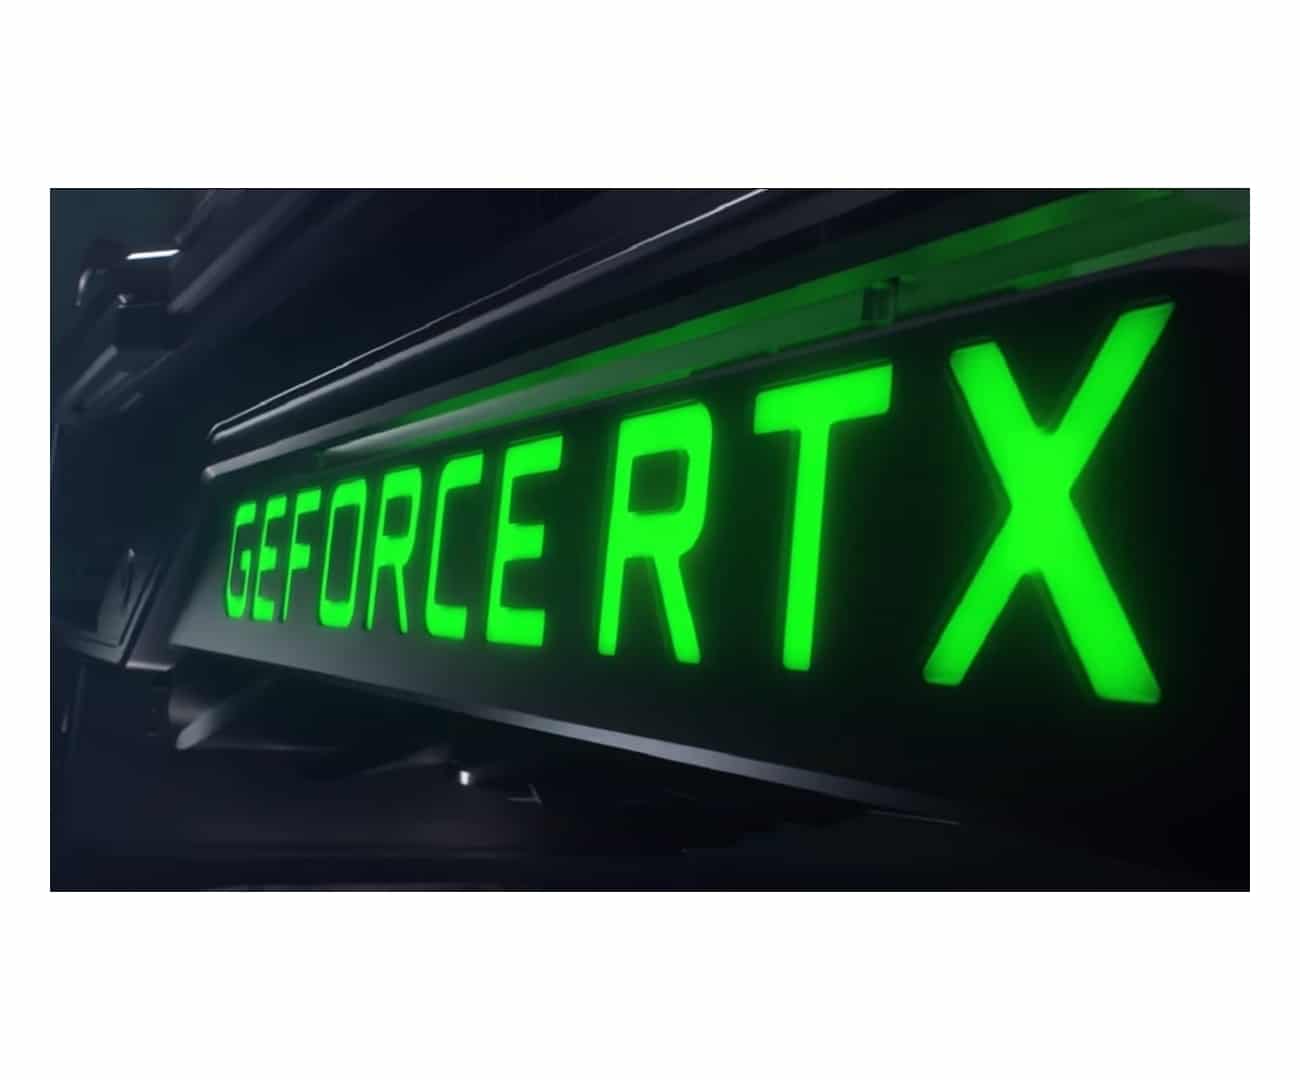 Nvidia RTX New